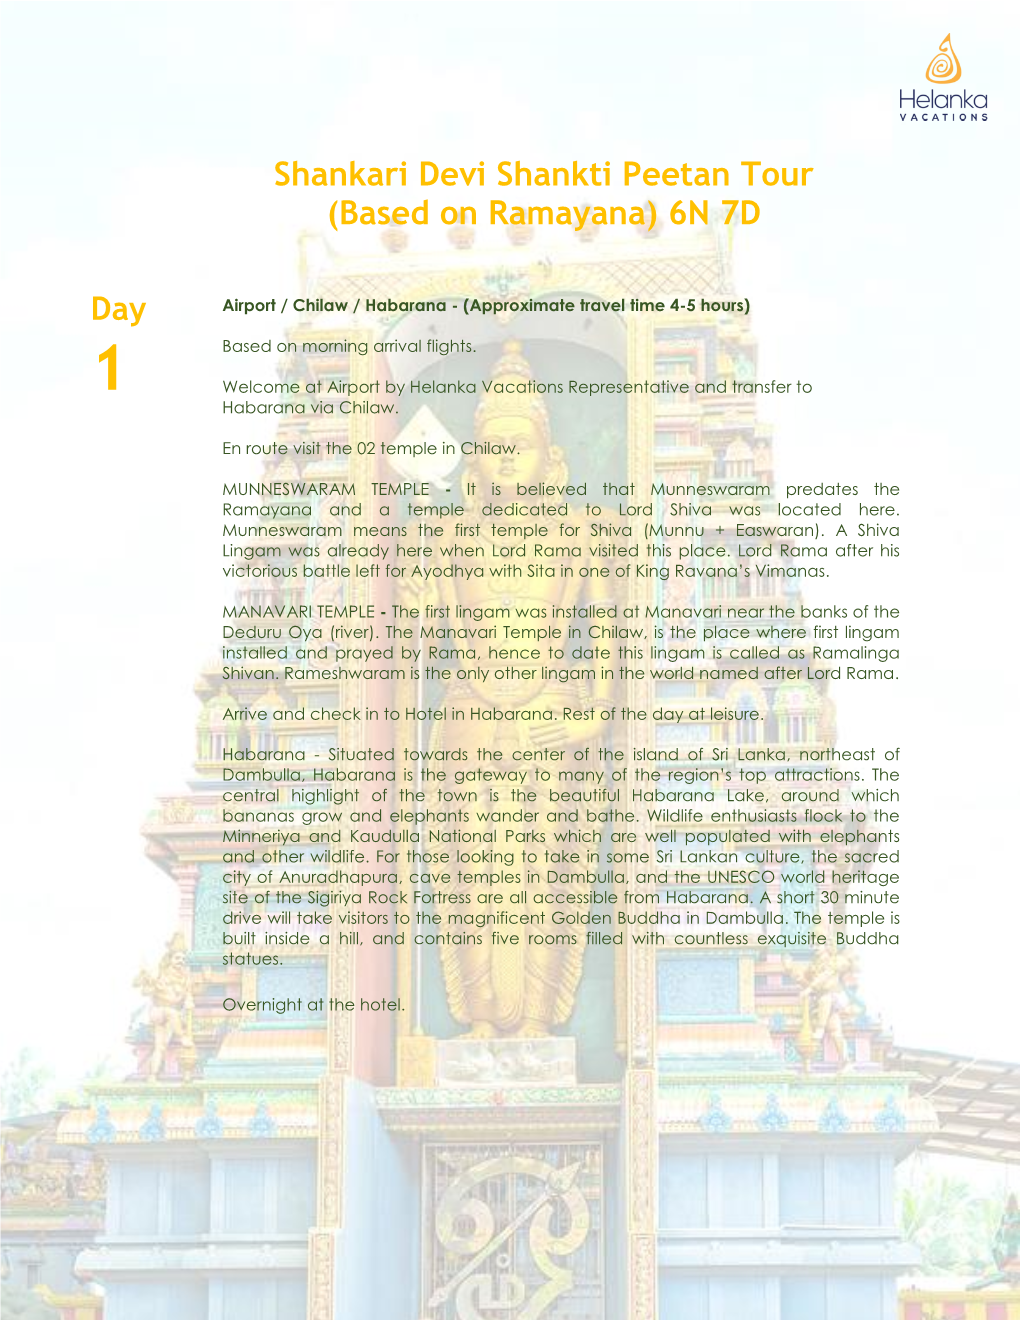 Shankari Devi Shankti Peetan Tour (Based on Ramayana) 6N 7D